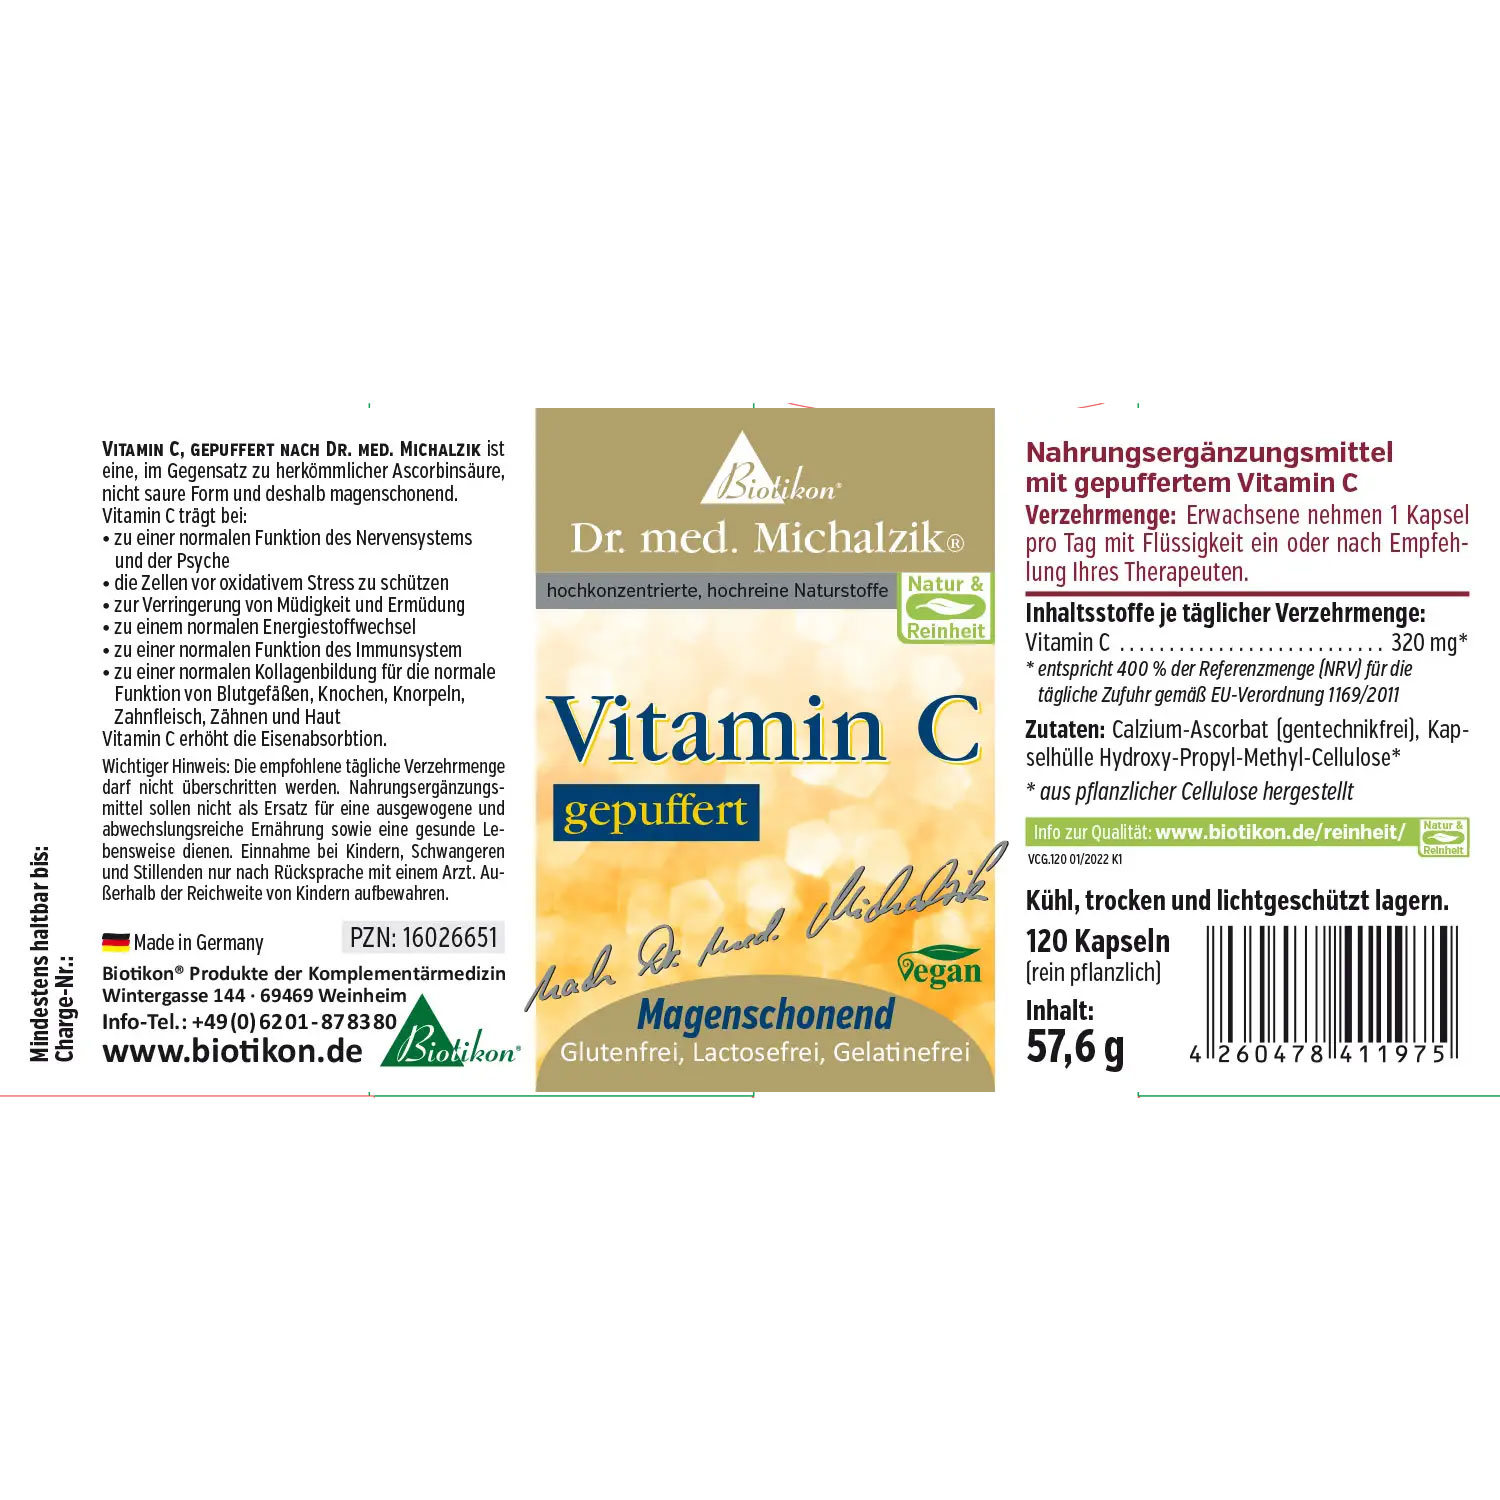 Vitamin C, gepuffert von Biotikon - Etikett